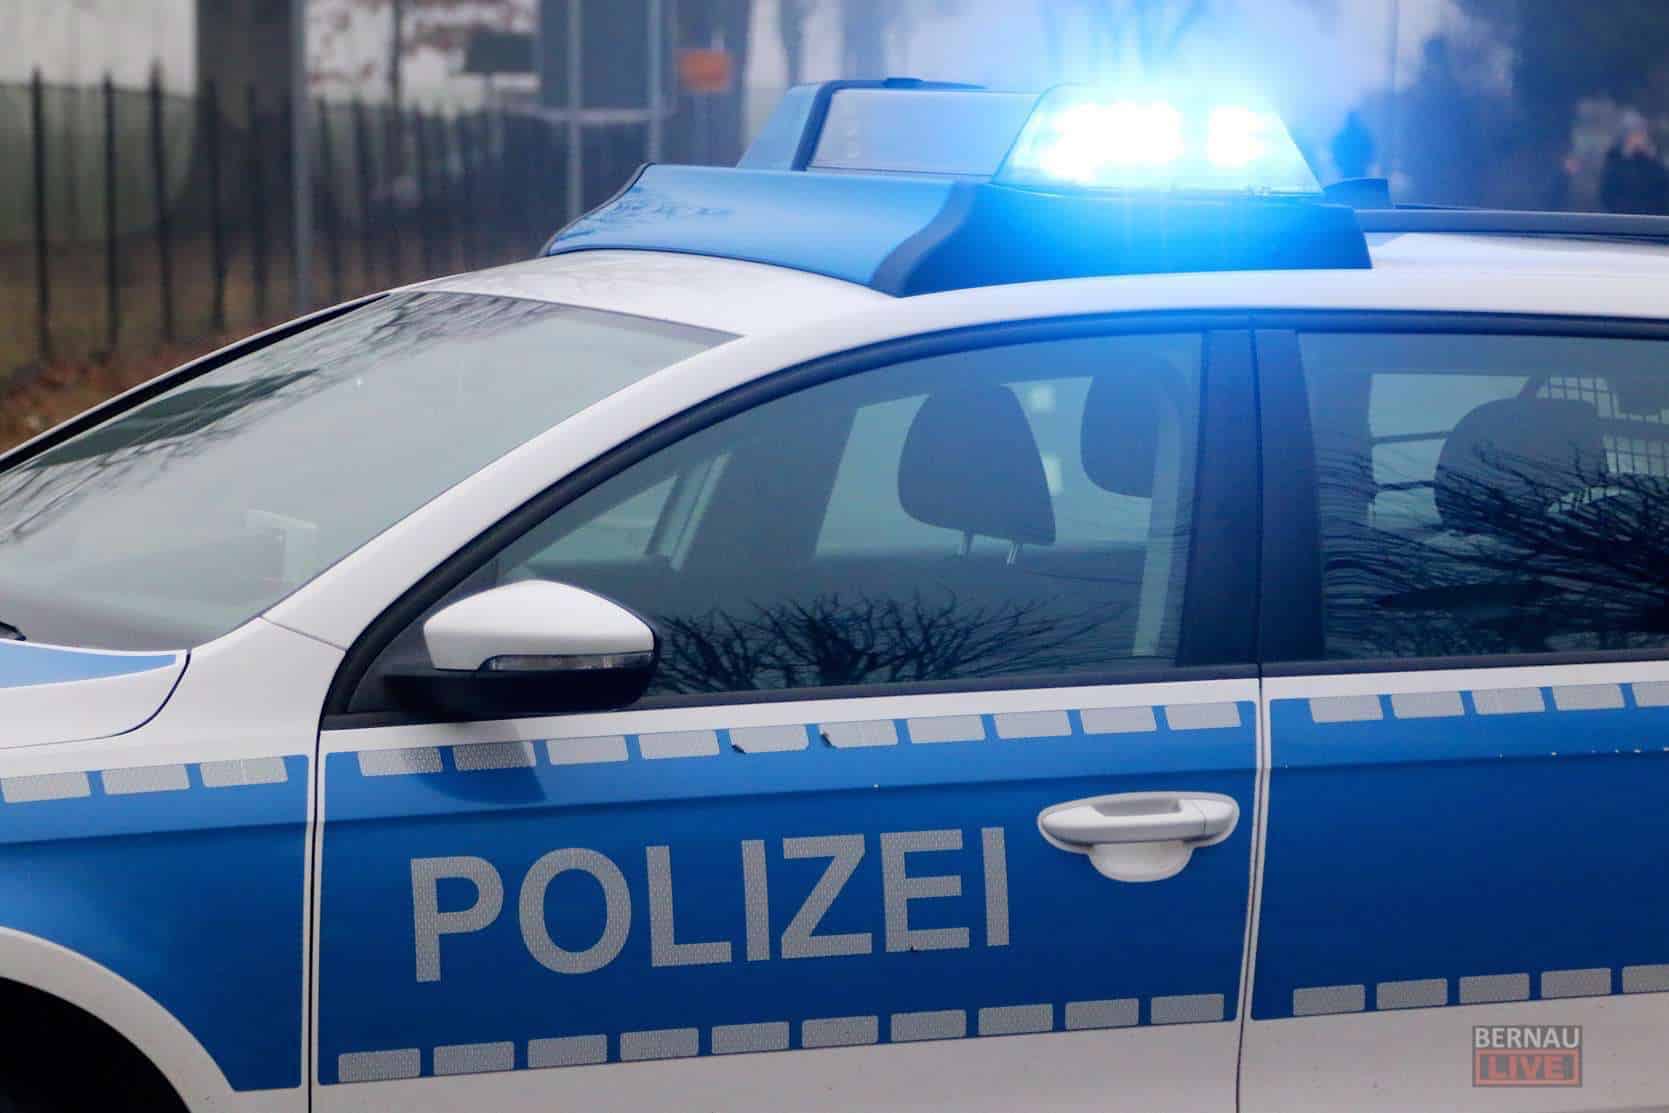 Polizei Bernau: In Turnhalle eingebrochen - Falscher Polizist am Telefon